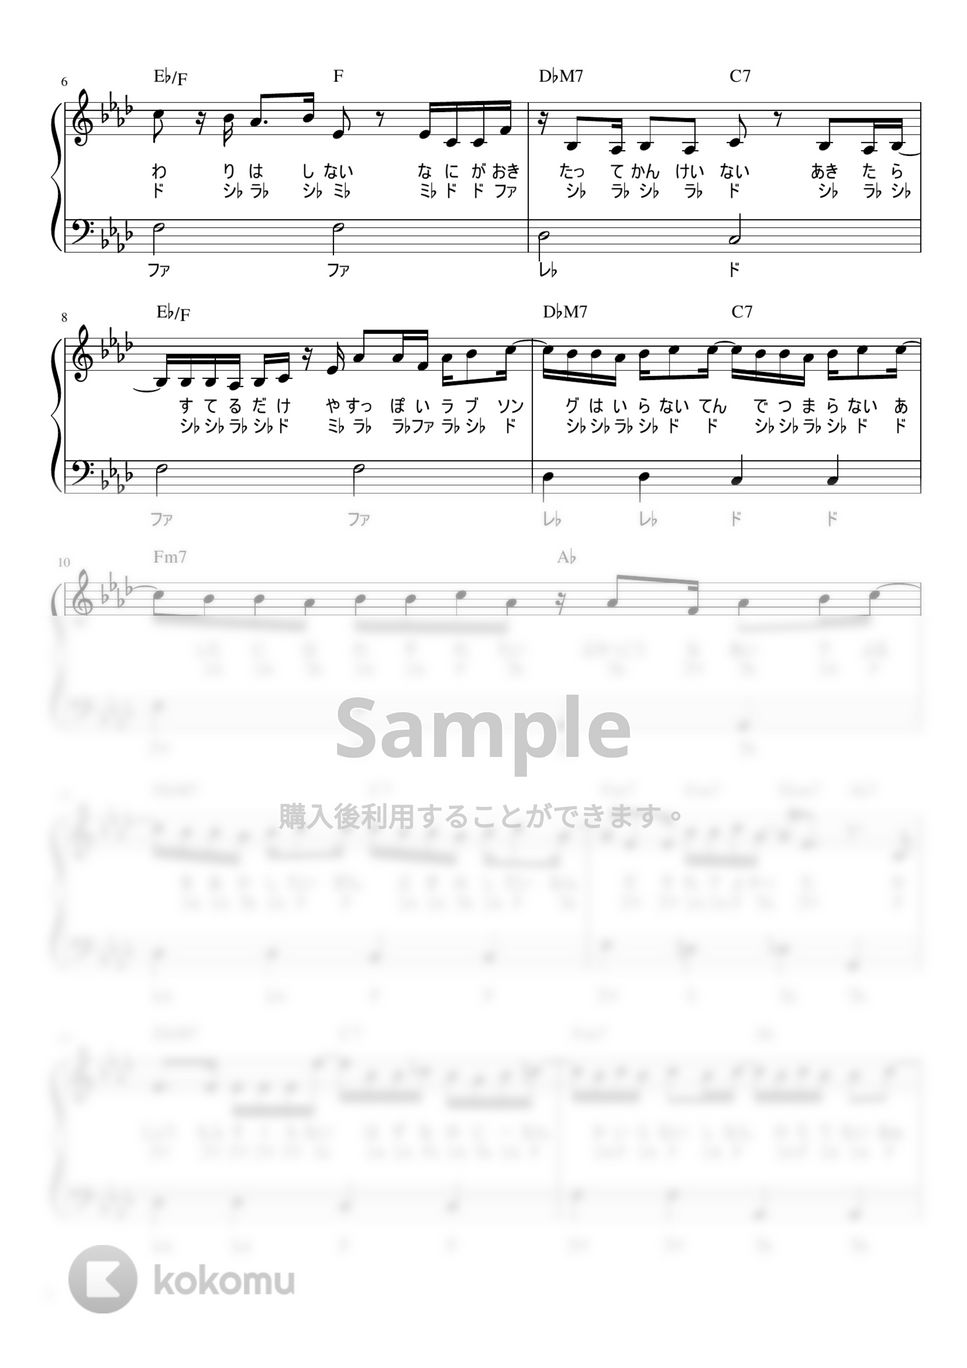 なとり - フライデー・ナイト (かんたん / 歌詞付き / ドレミ付き / 初心者) by piano.tokyo